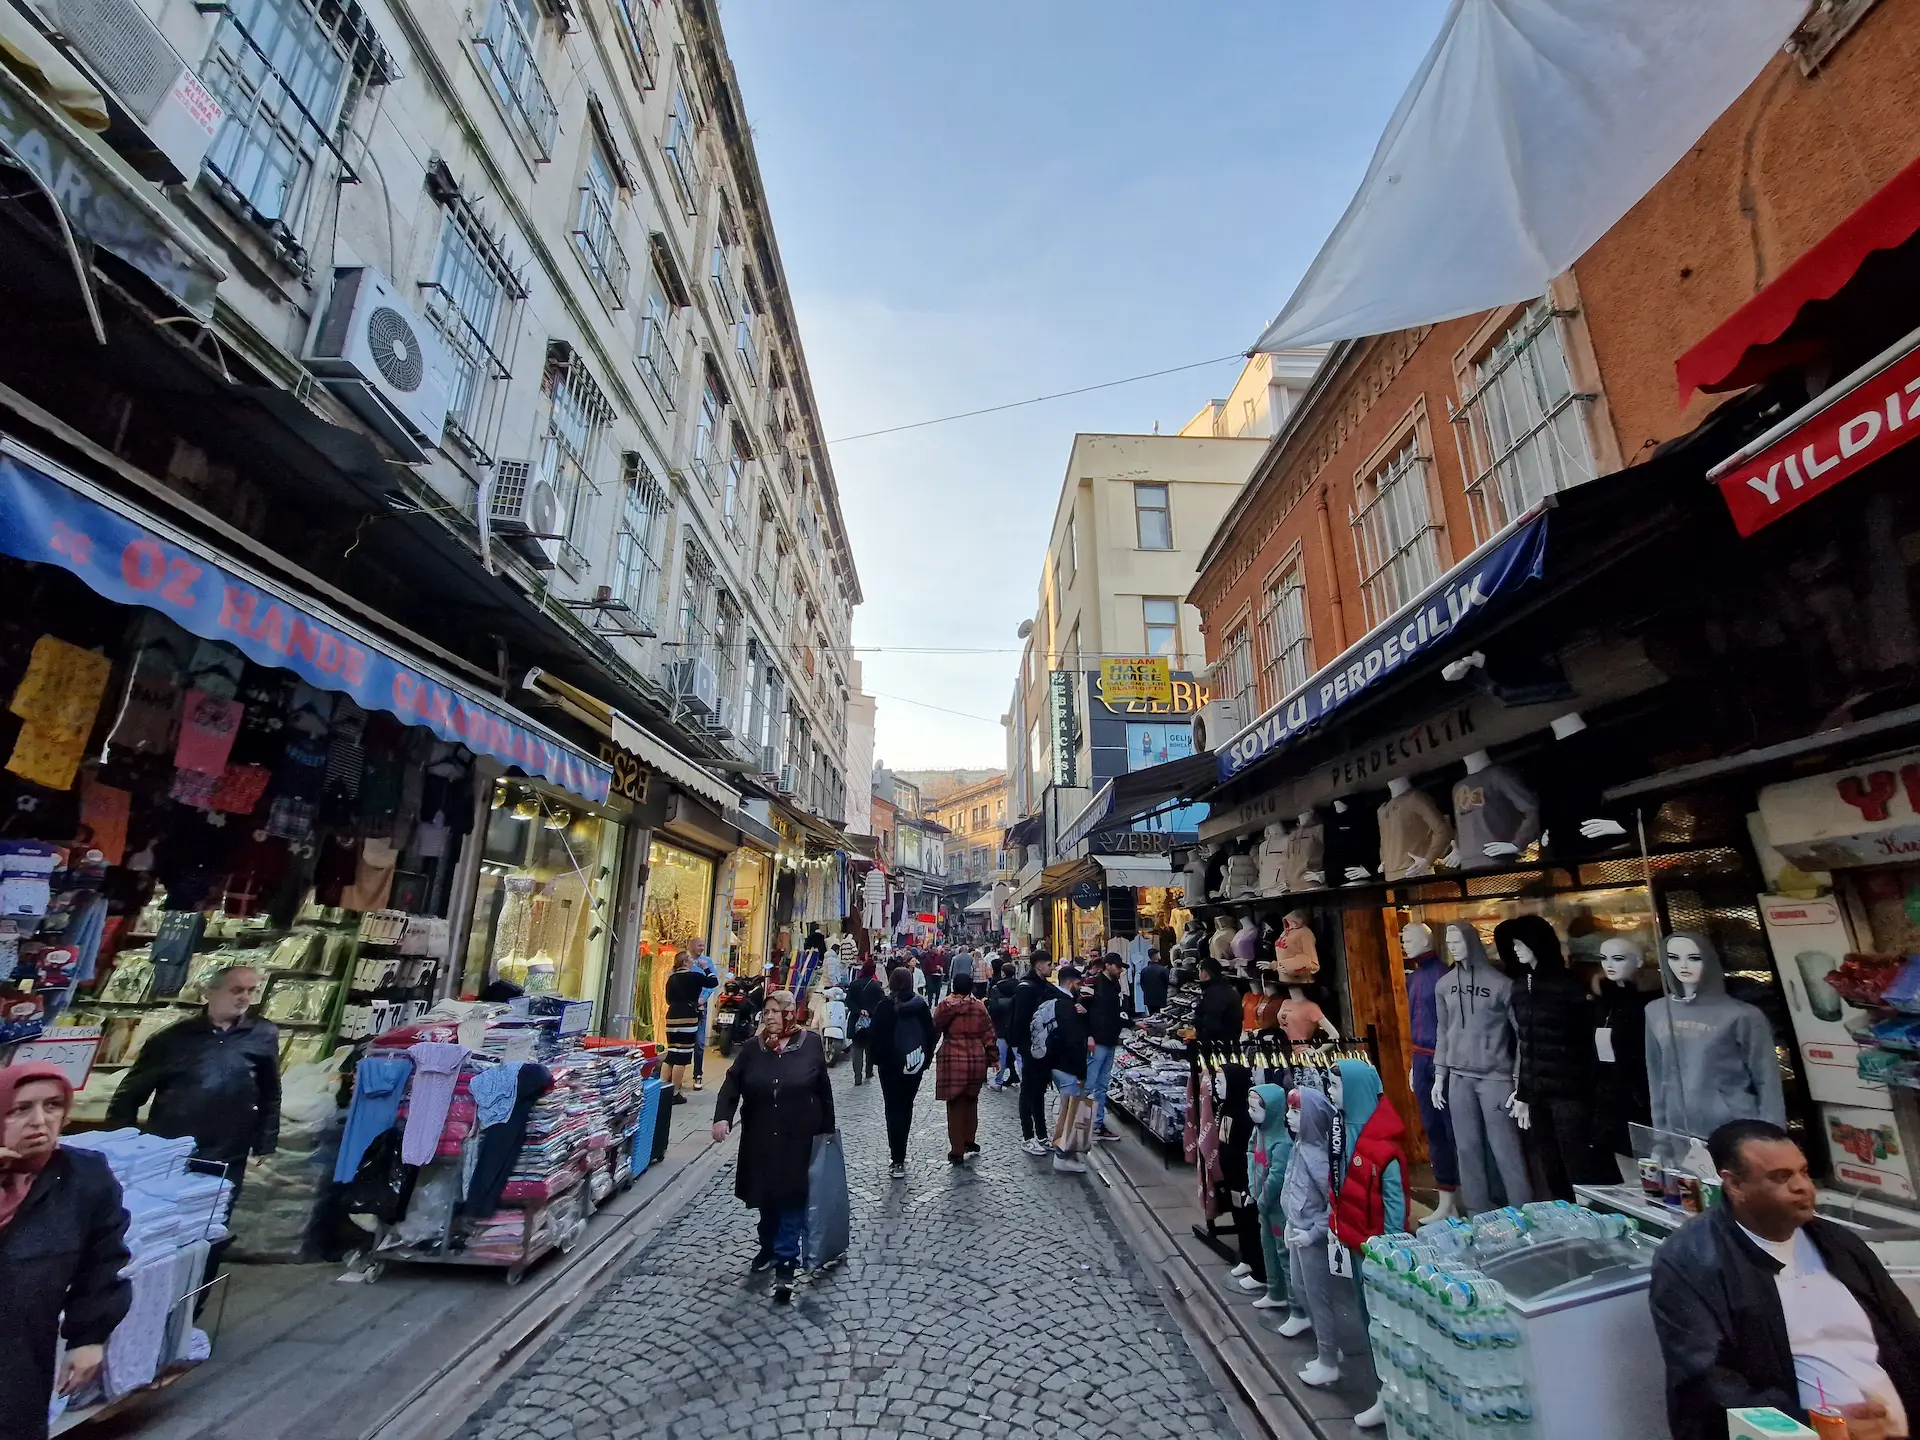 Une ruelle animée d'Eminönü. Sur les deux côtés, des magasins qui vendent des habits, on voit notamment des têtes de mannequins couvertes de voiles colorés. Il y a du monde.